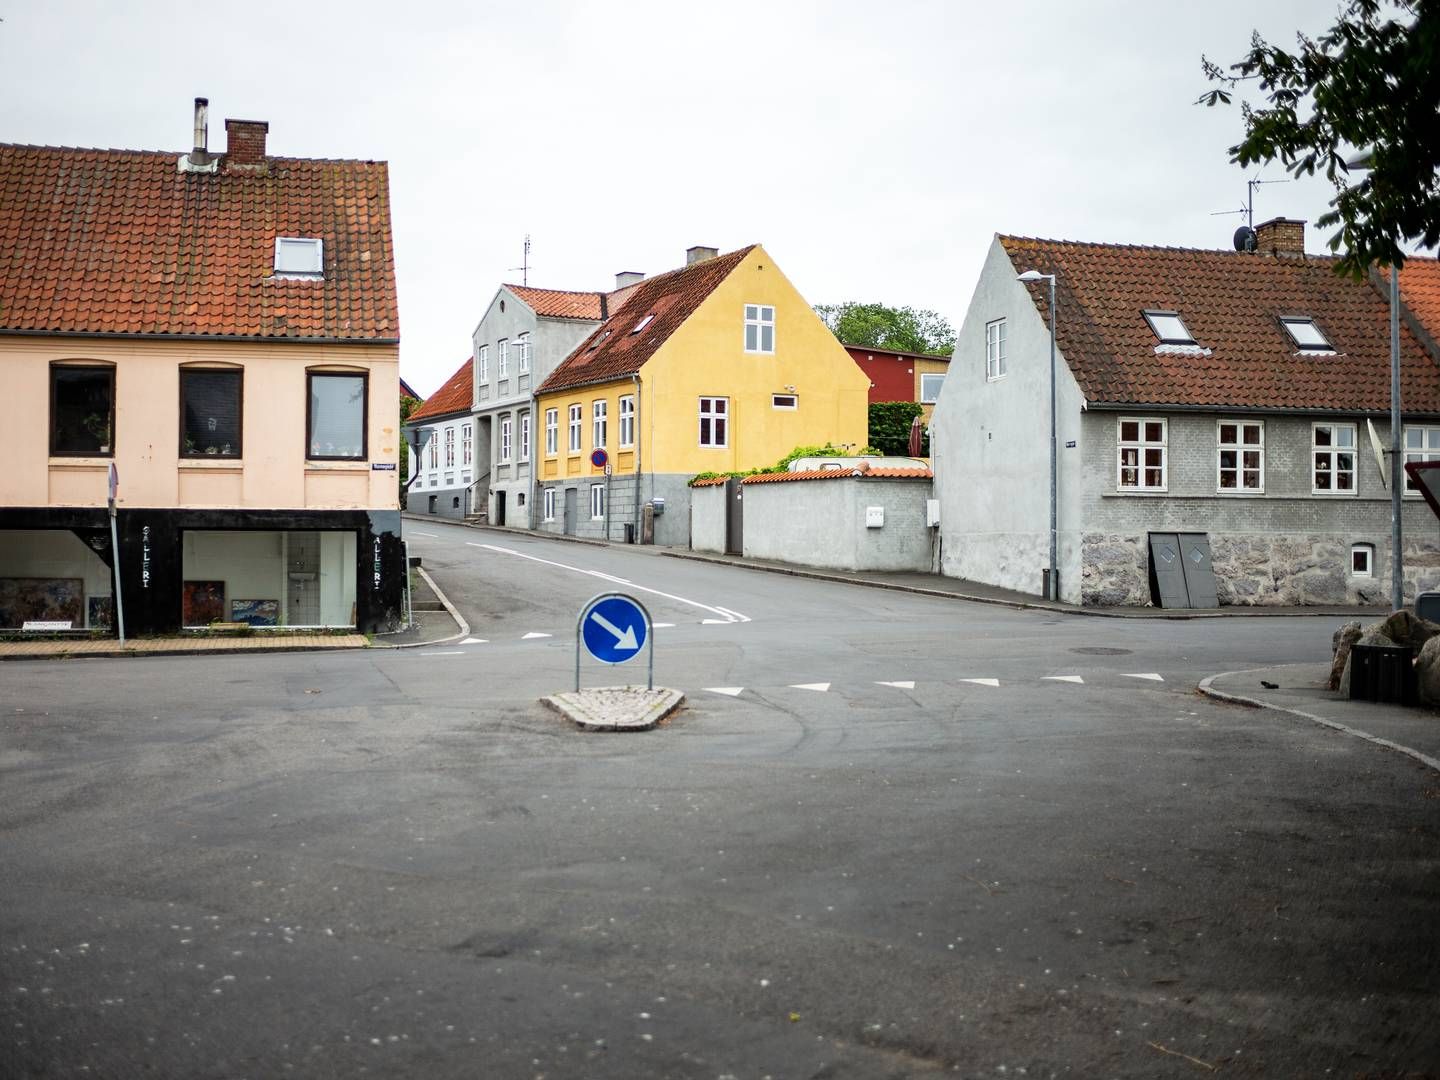 Grønbechs Hotel ligger her i Allinge på det nordlige Bornholm. | Photo: Rasmus Flindt Pedersen